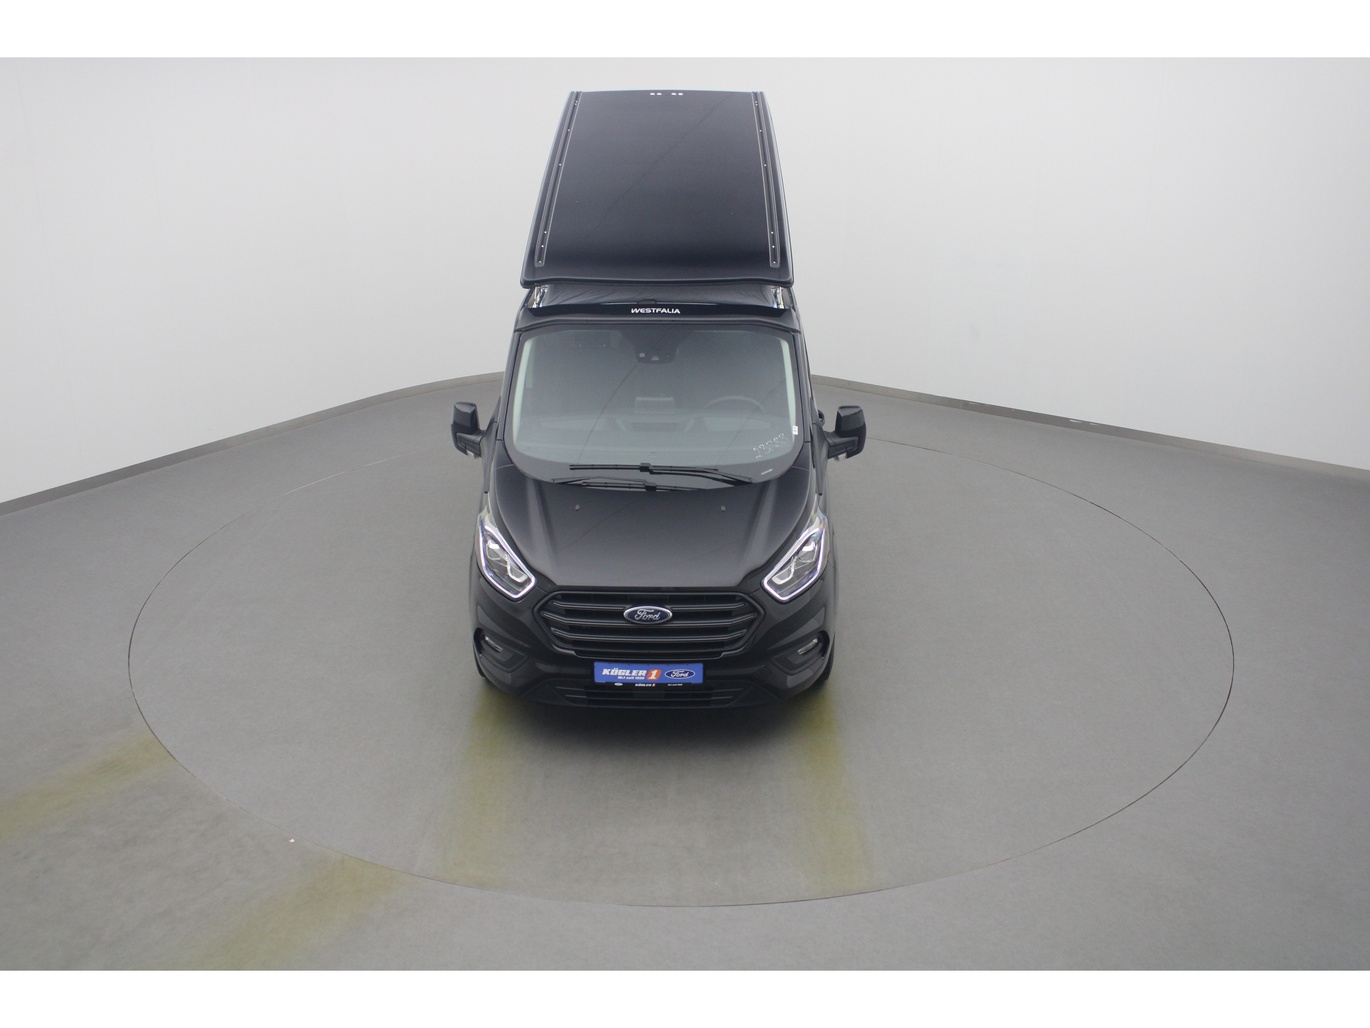  Ford Transit Nugget Aufstelldach 185PS / Sicht-P3 in Obsidianschwarz 